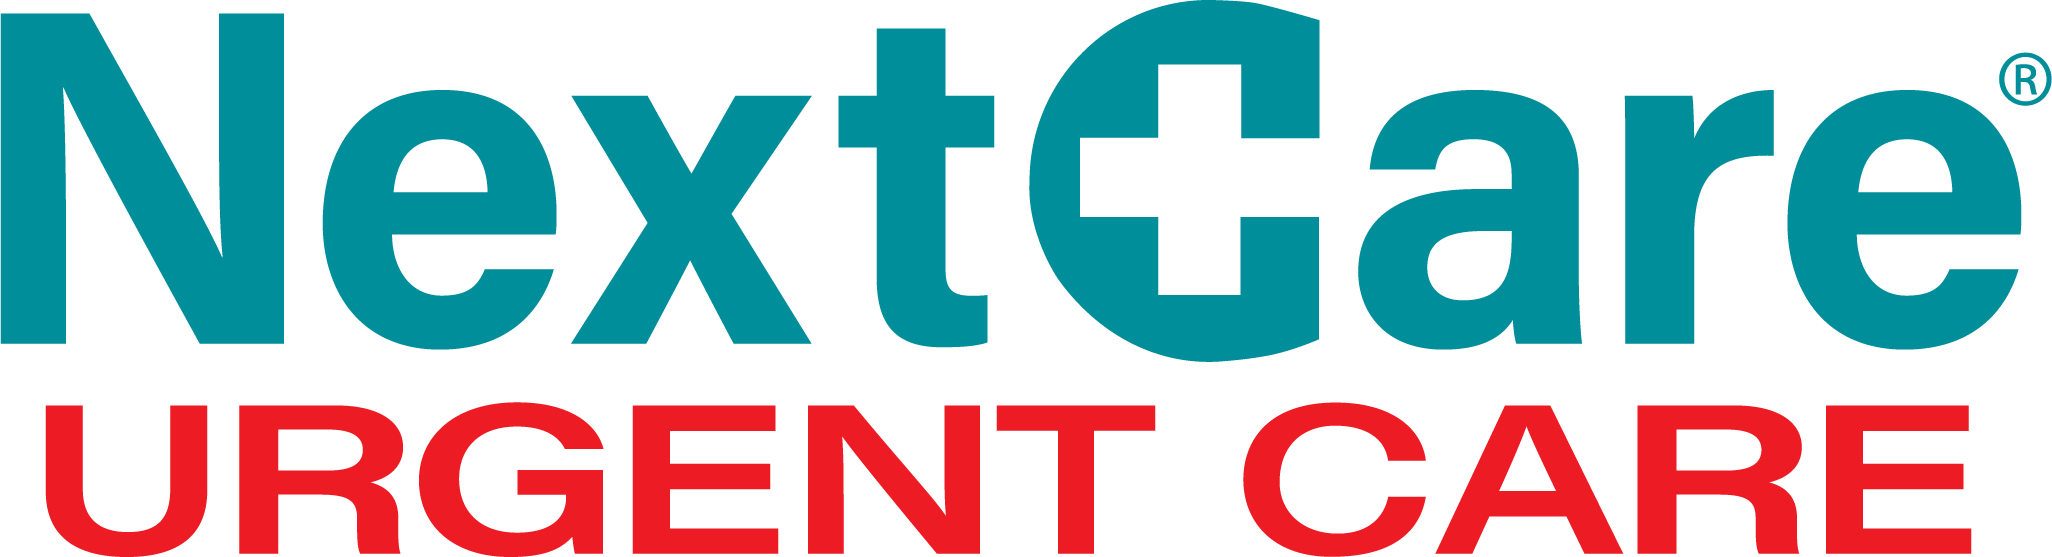 NextCare Urgent Care - Peoria Logo